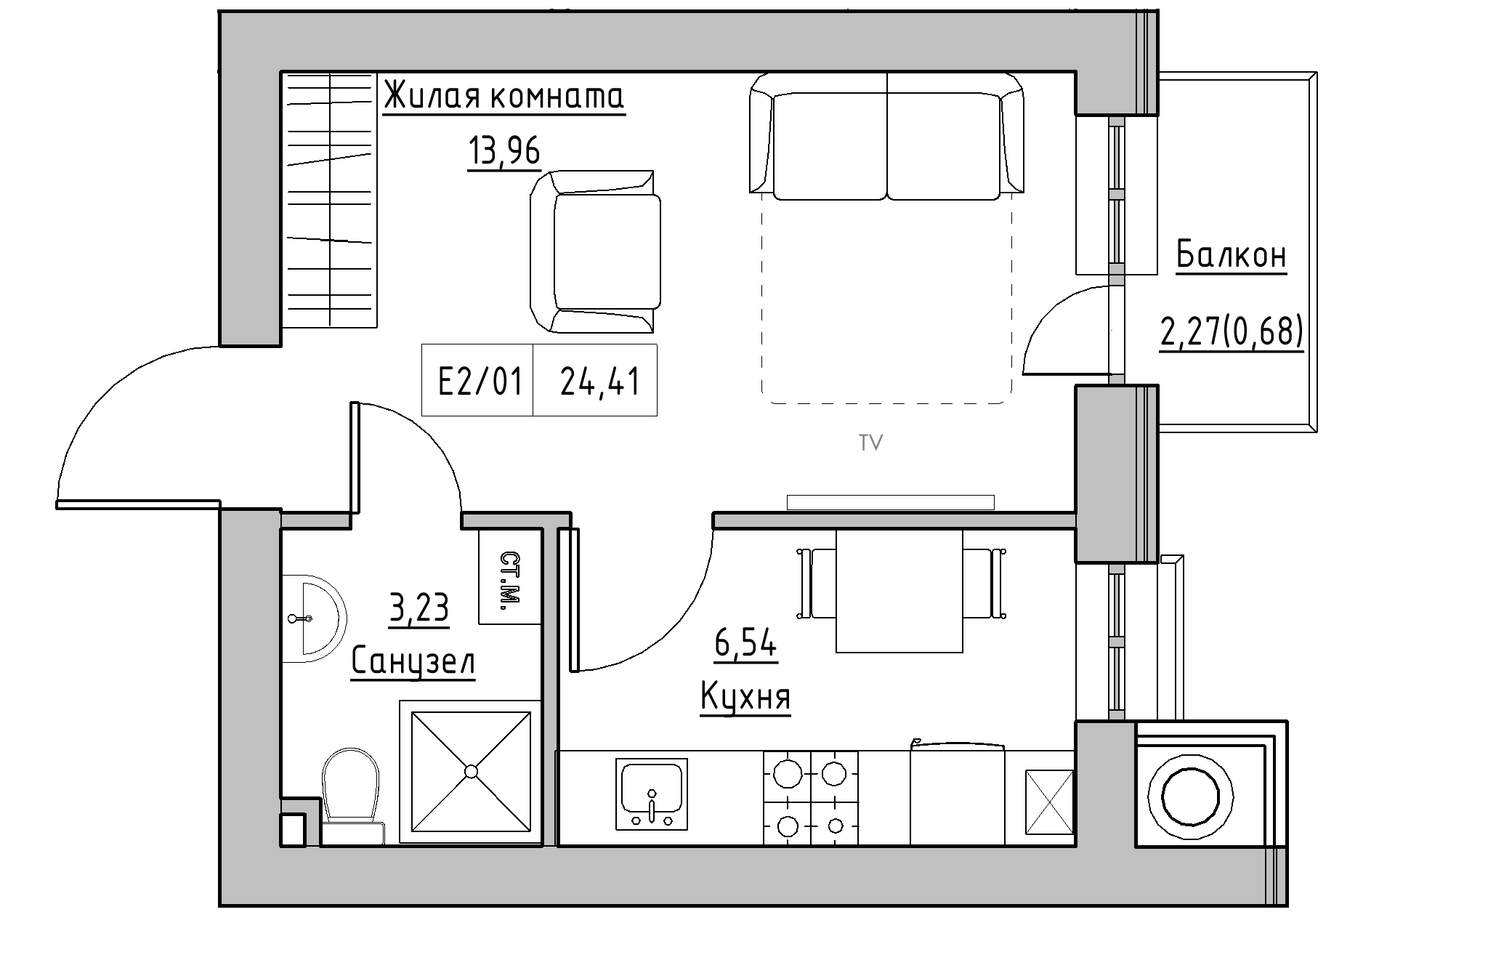 Планування 1-к квартира площею 24.41м2, KS-010-02/0009.